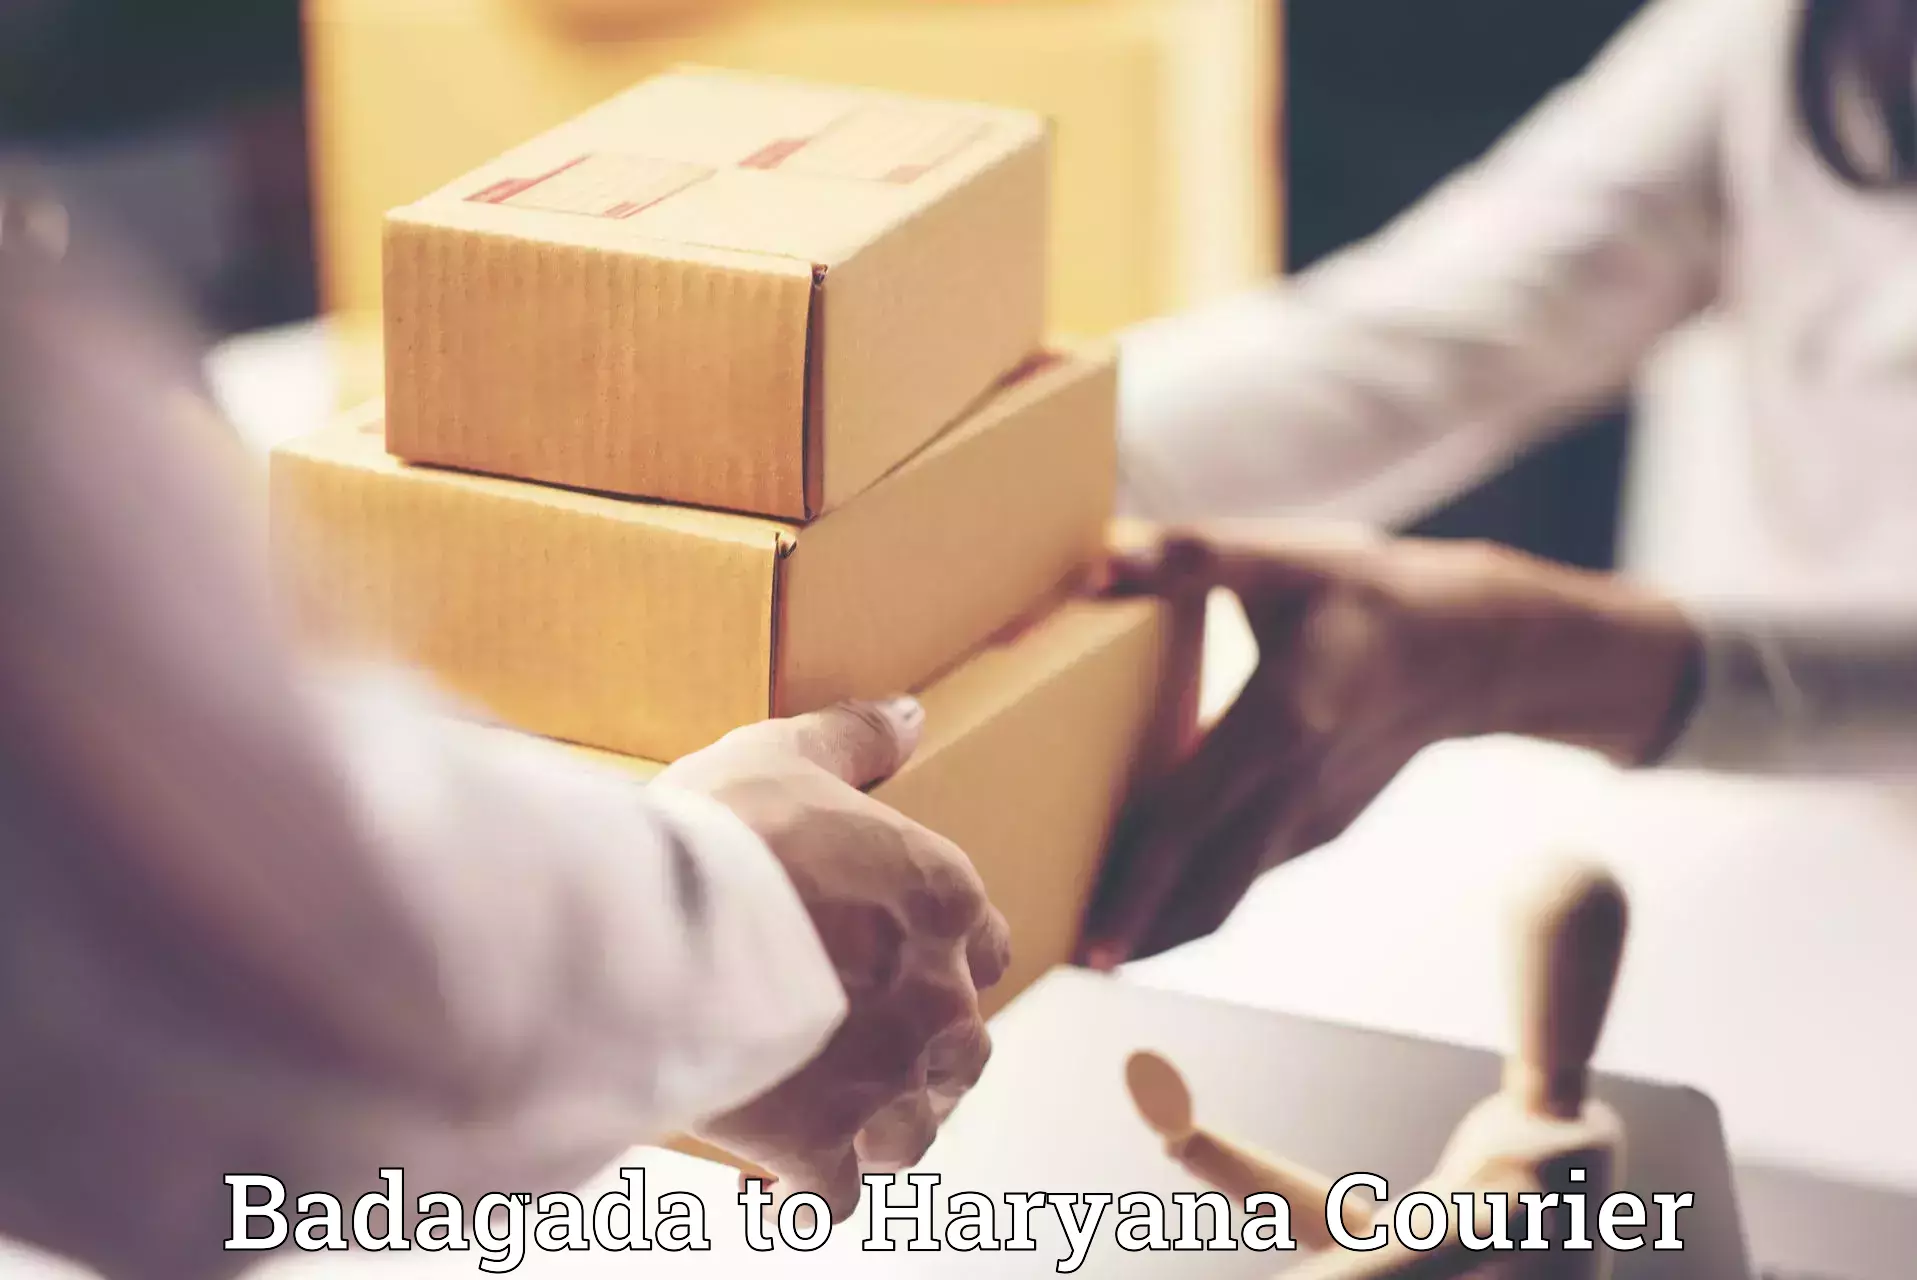 Furniture moving services Badagada to Haryana